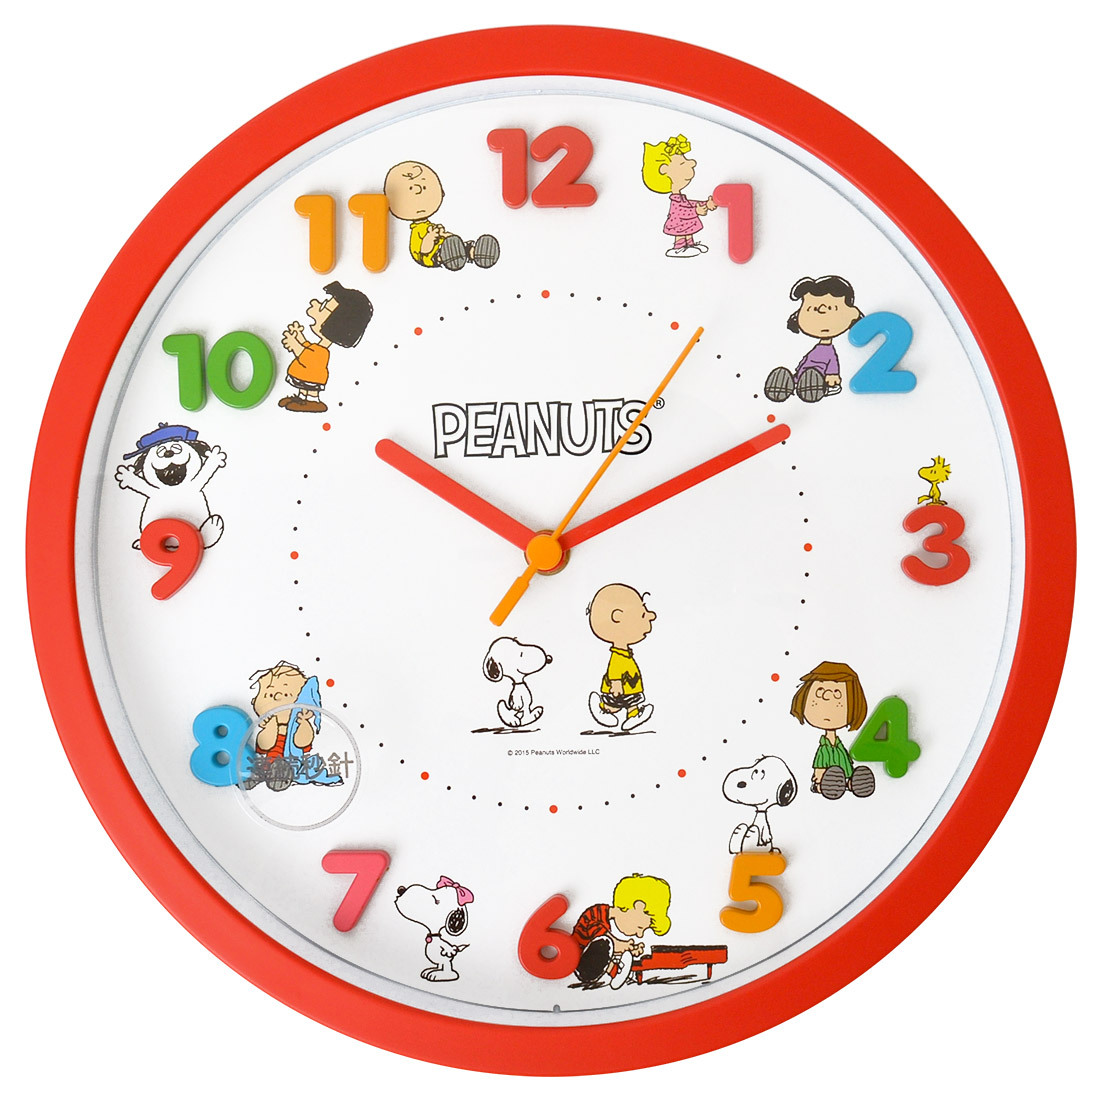 時計 壁掛け 掛け時計 かわいい スヌーピー キャラクター 壁掛け時計 30cm 一人暮らし 女子 男子 子供部屋 インテリア 女の子 子供 キッズ キャラクター グッズ Tjs Clock03 Tis 通販 Yahoo ショッピング